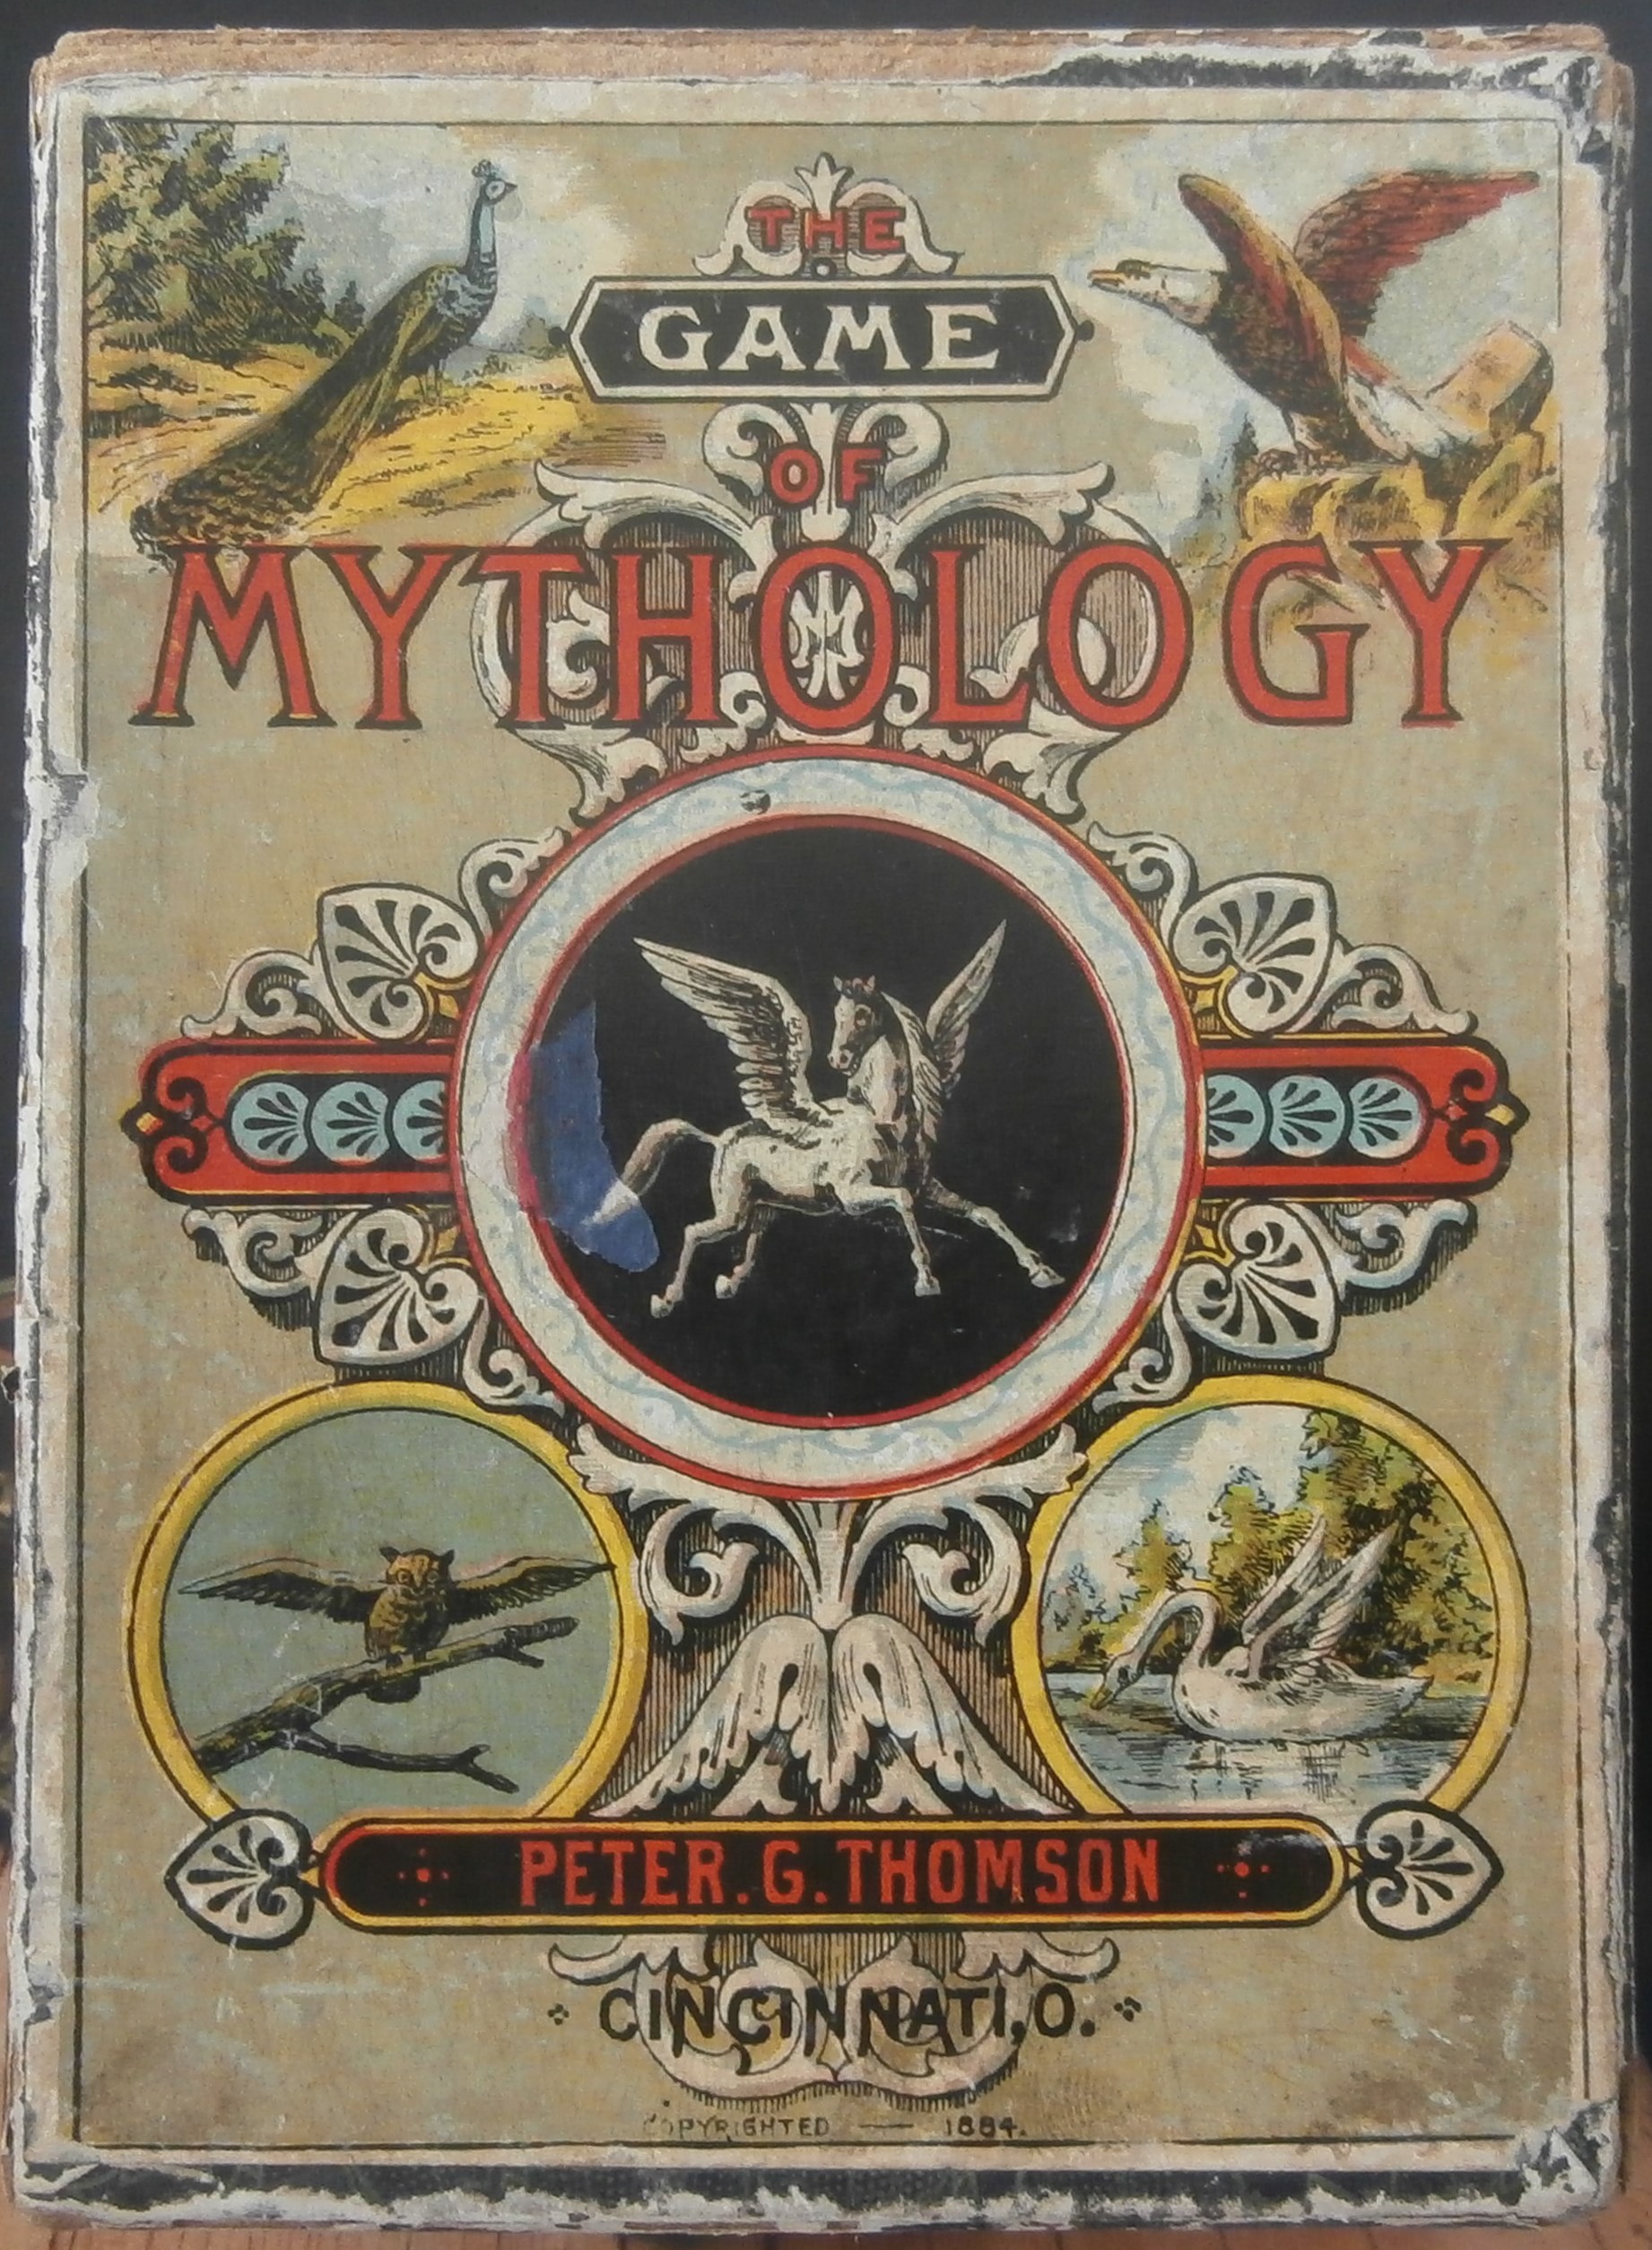 Antique 1884 Game of Mythology